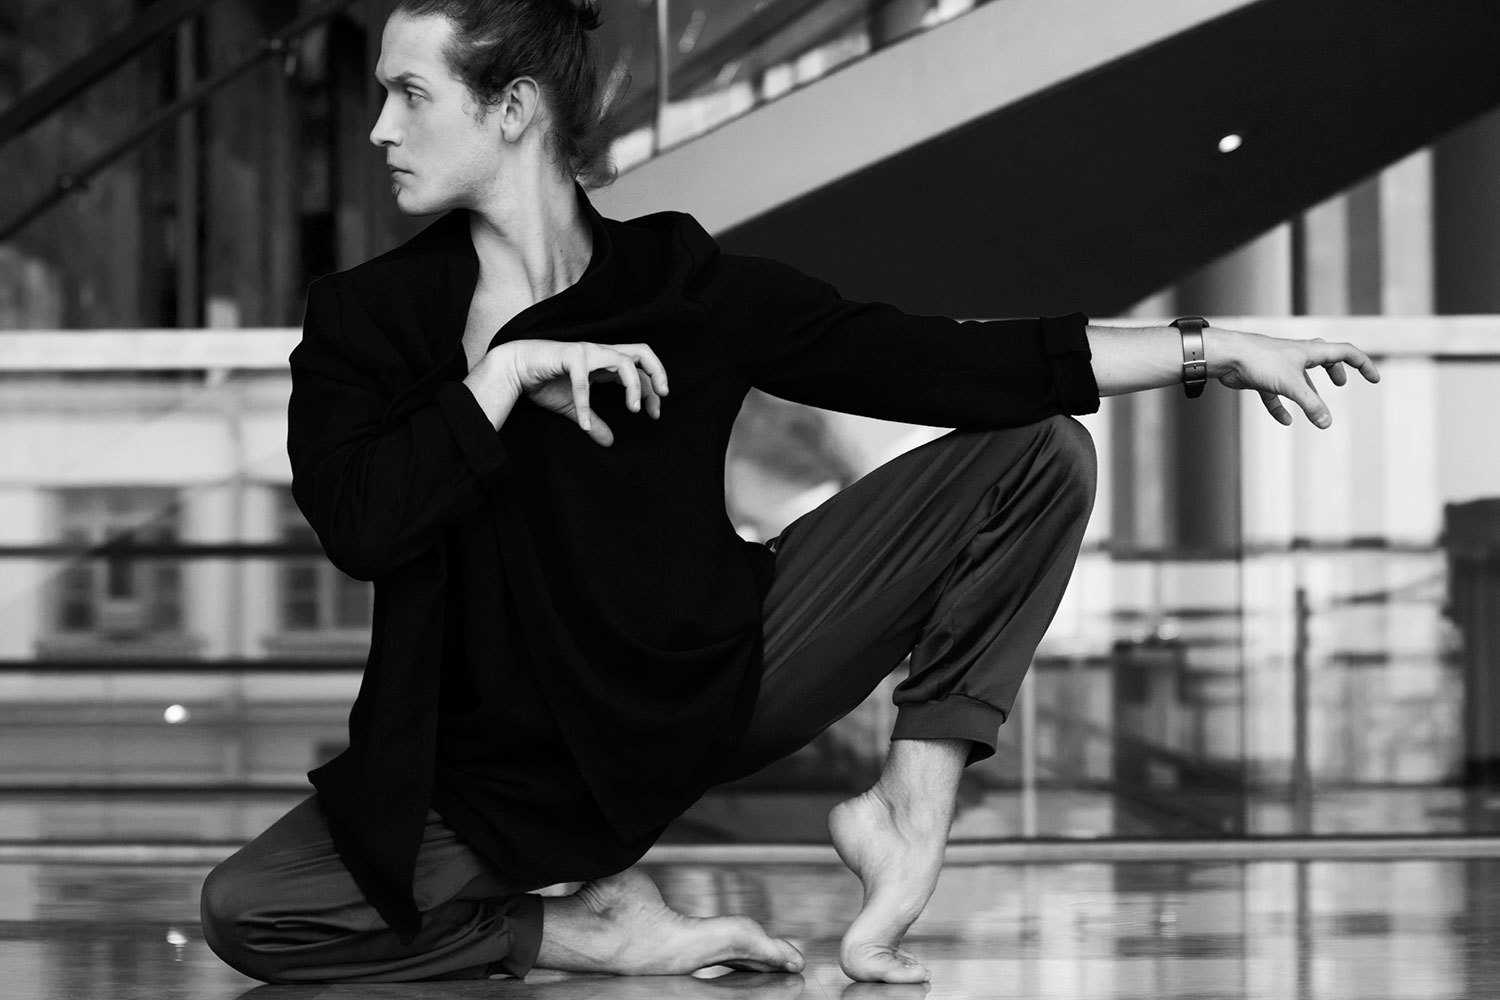 Диана вишнёва — биография, личная жизнь, фото, новости, балерина, «инстаграм», балет, studio context 2022 - 24сми